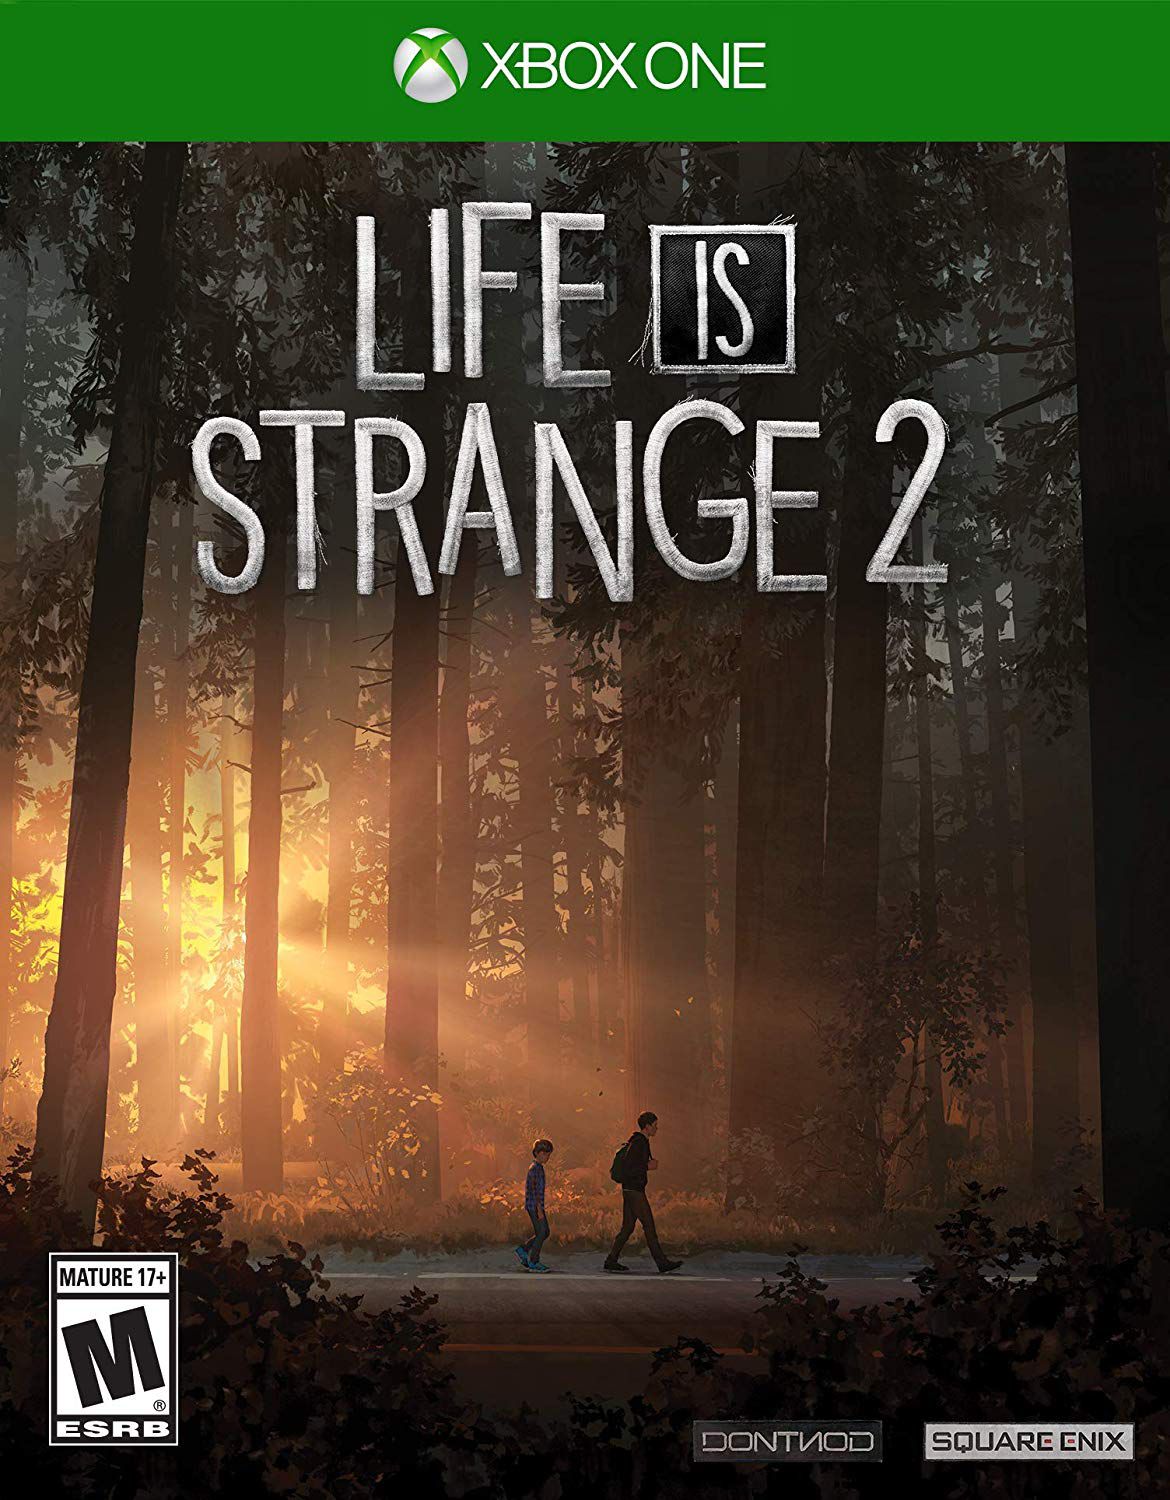 Análise: Life is Strange - Xbox Power